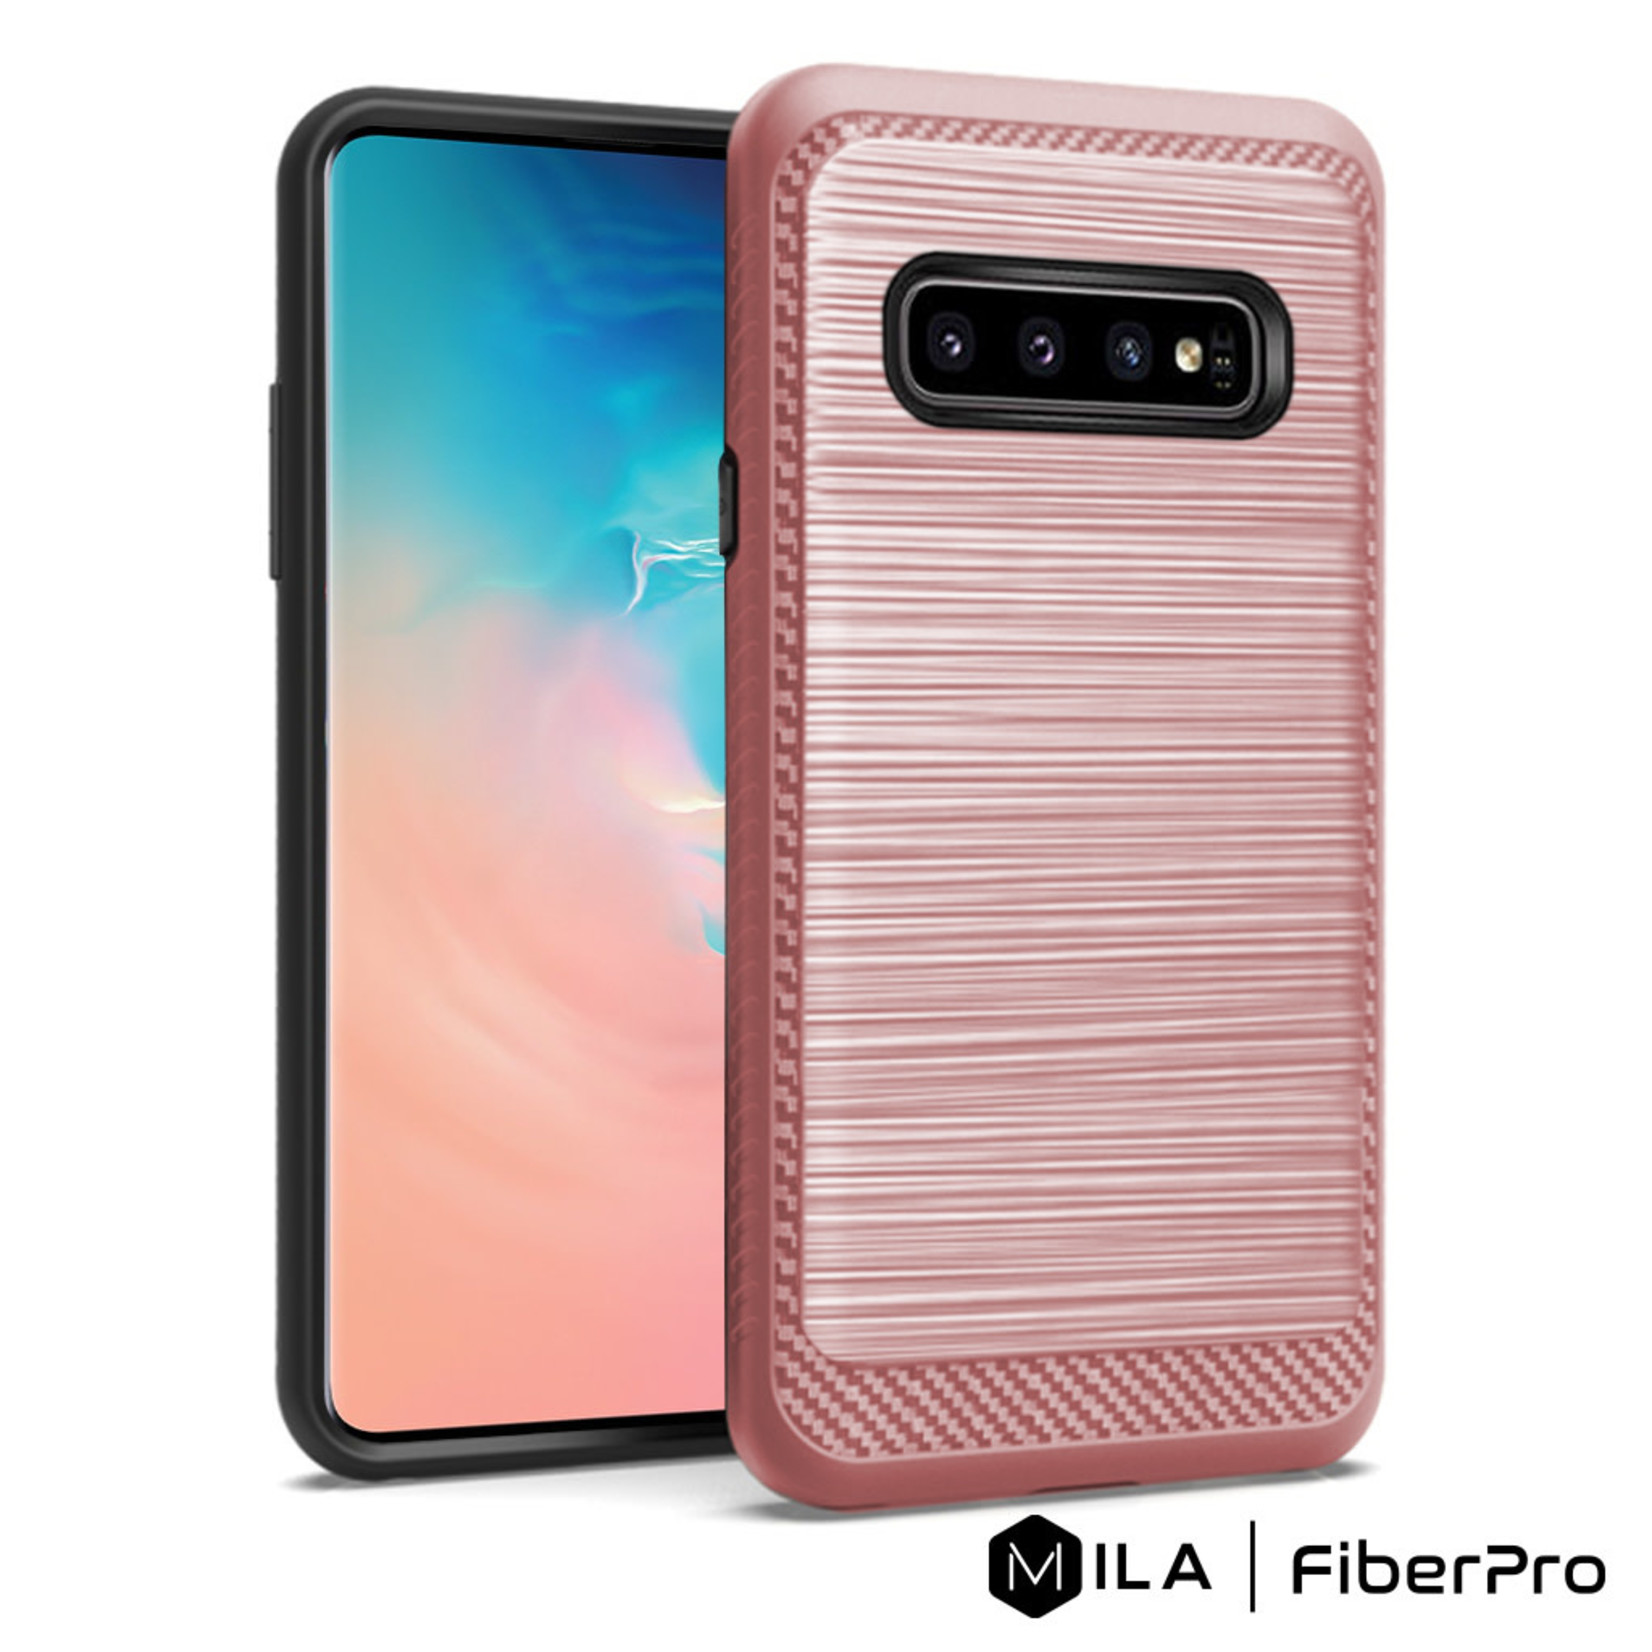 MILA | FiberPro Case for Galaxy S10e